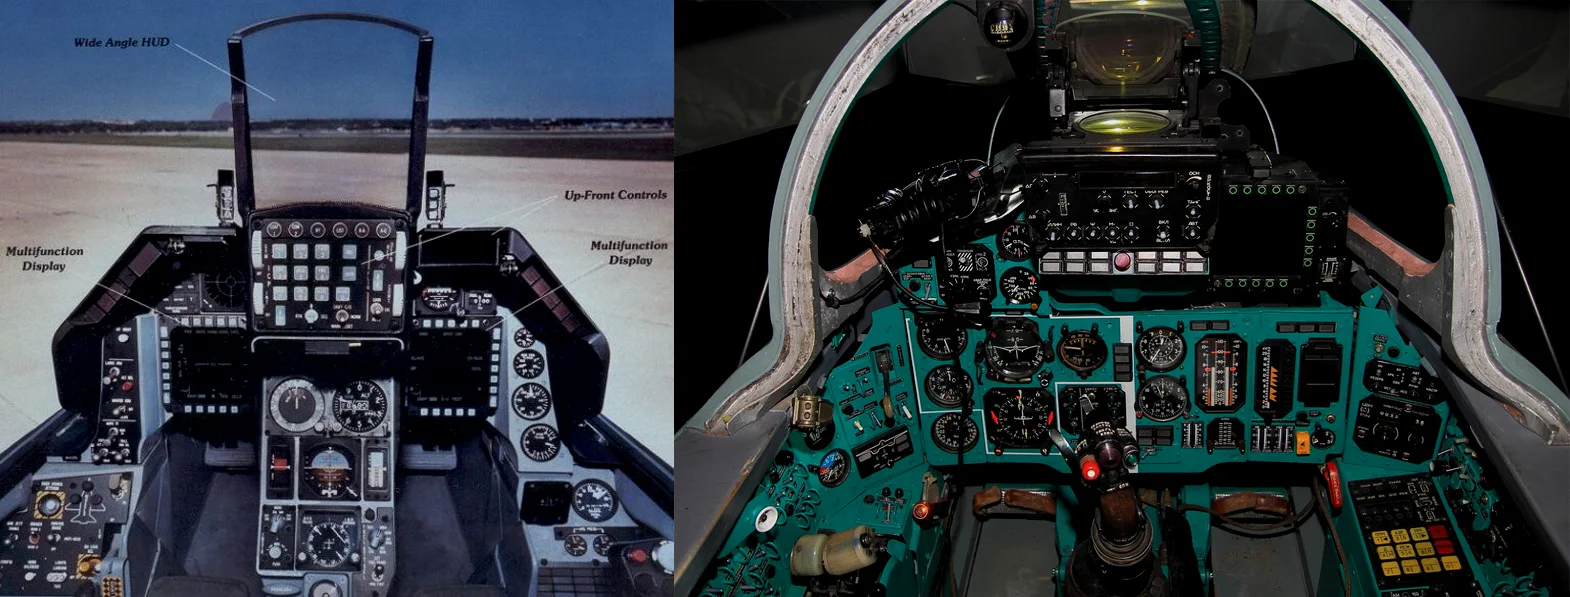 左F-16C Blk 25，右米格-29S，已经差了不止五年的差距了，但是即使对航电一无所知的人也会觉得左边更高级